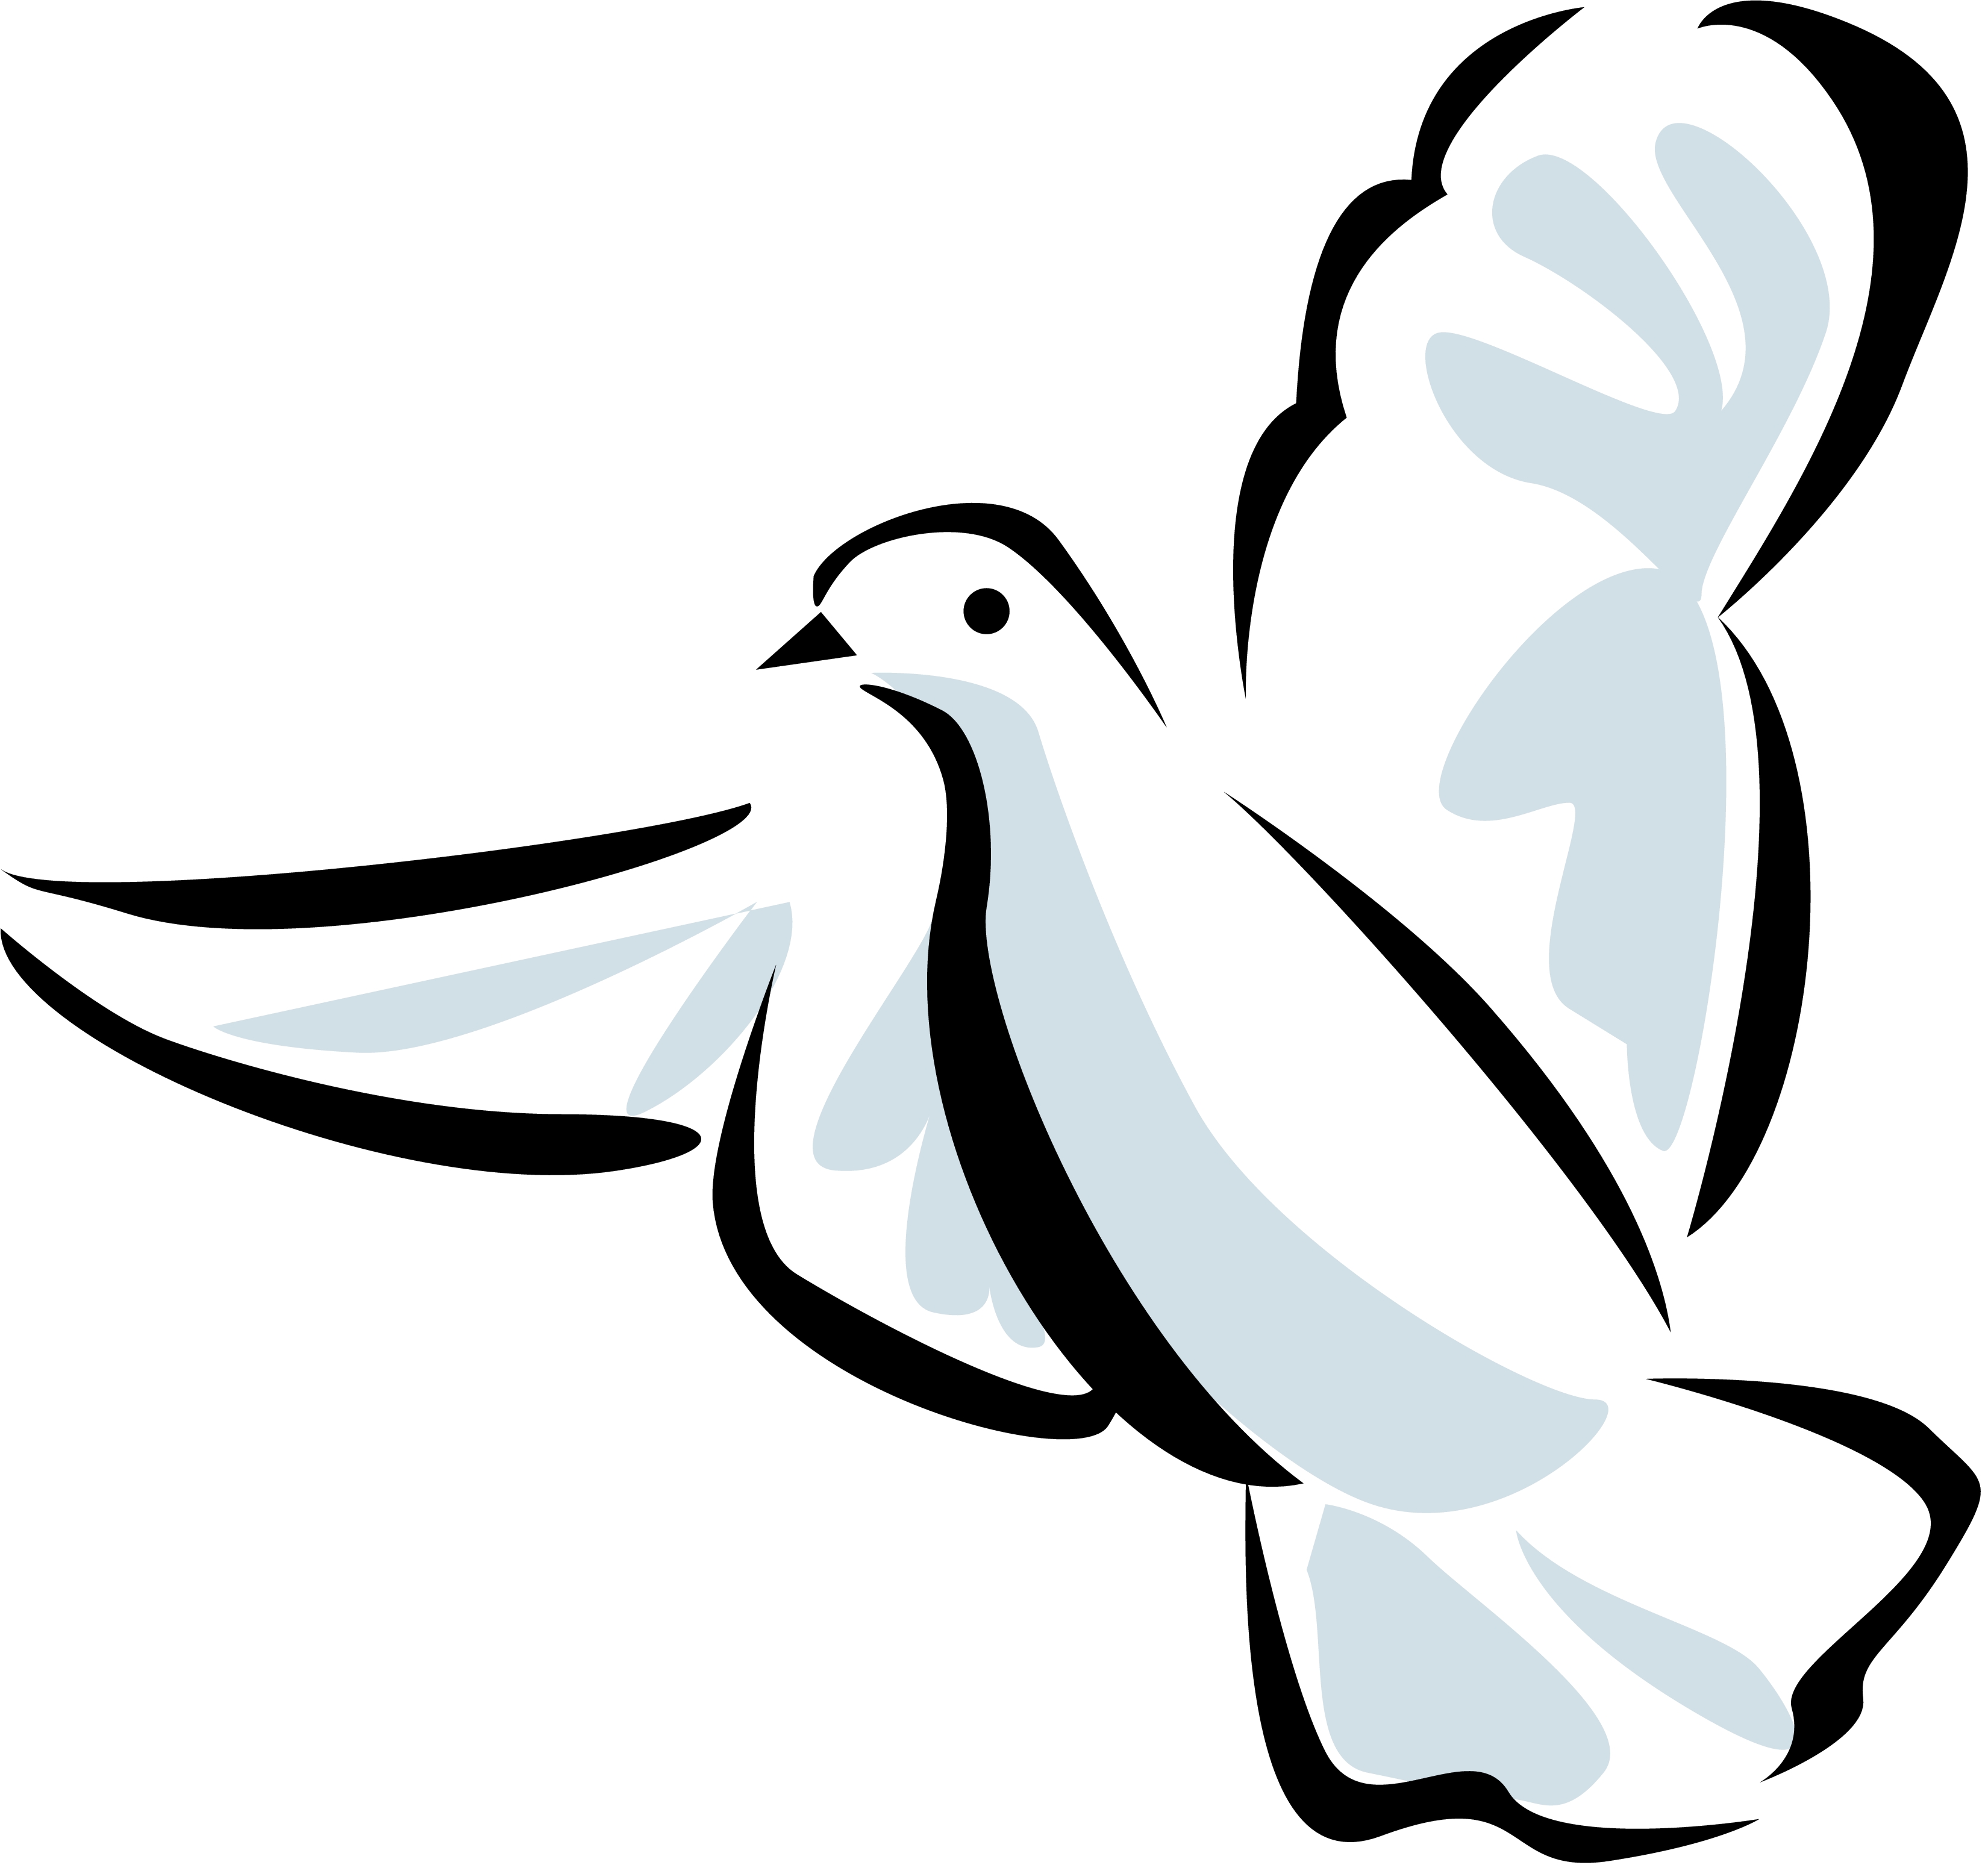 Christian holy spirit dove clip art dayasriod top 2